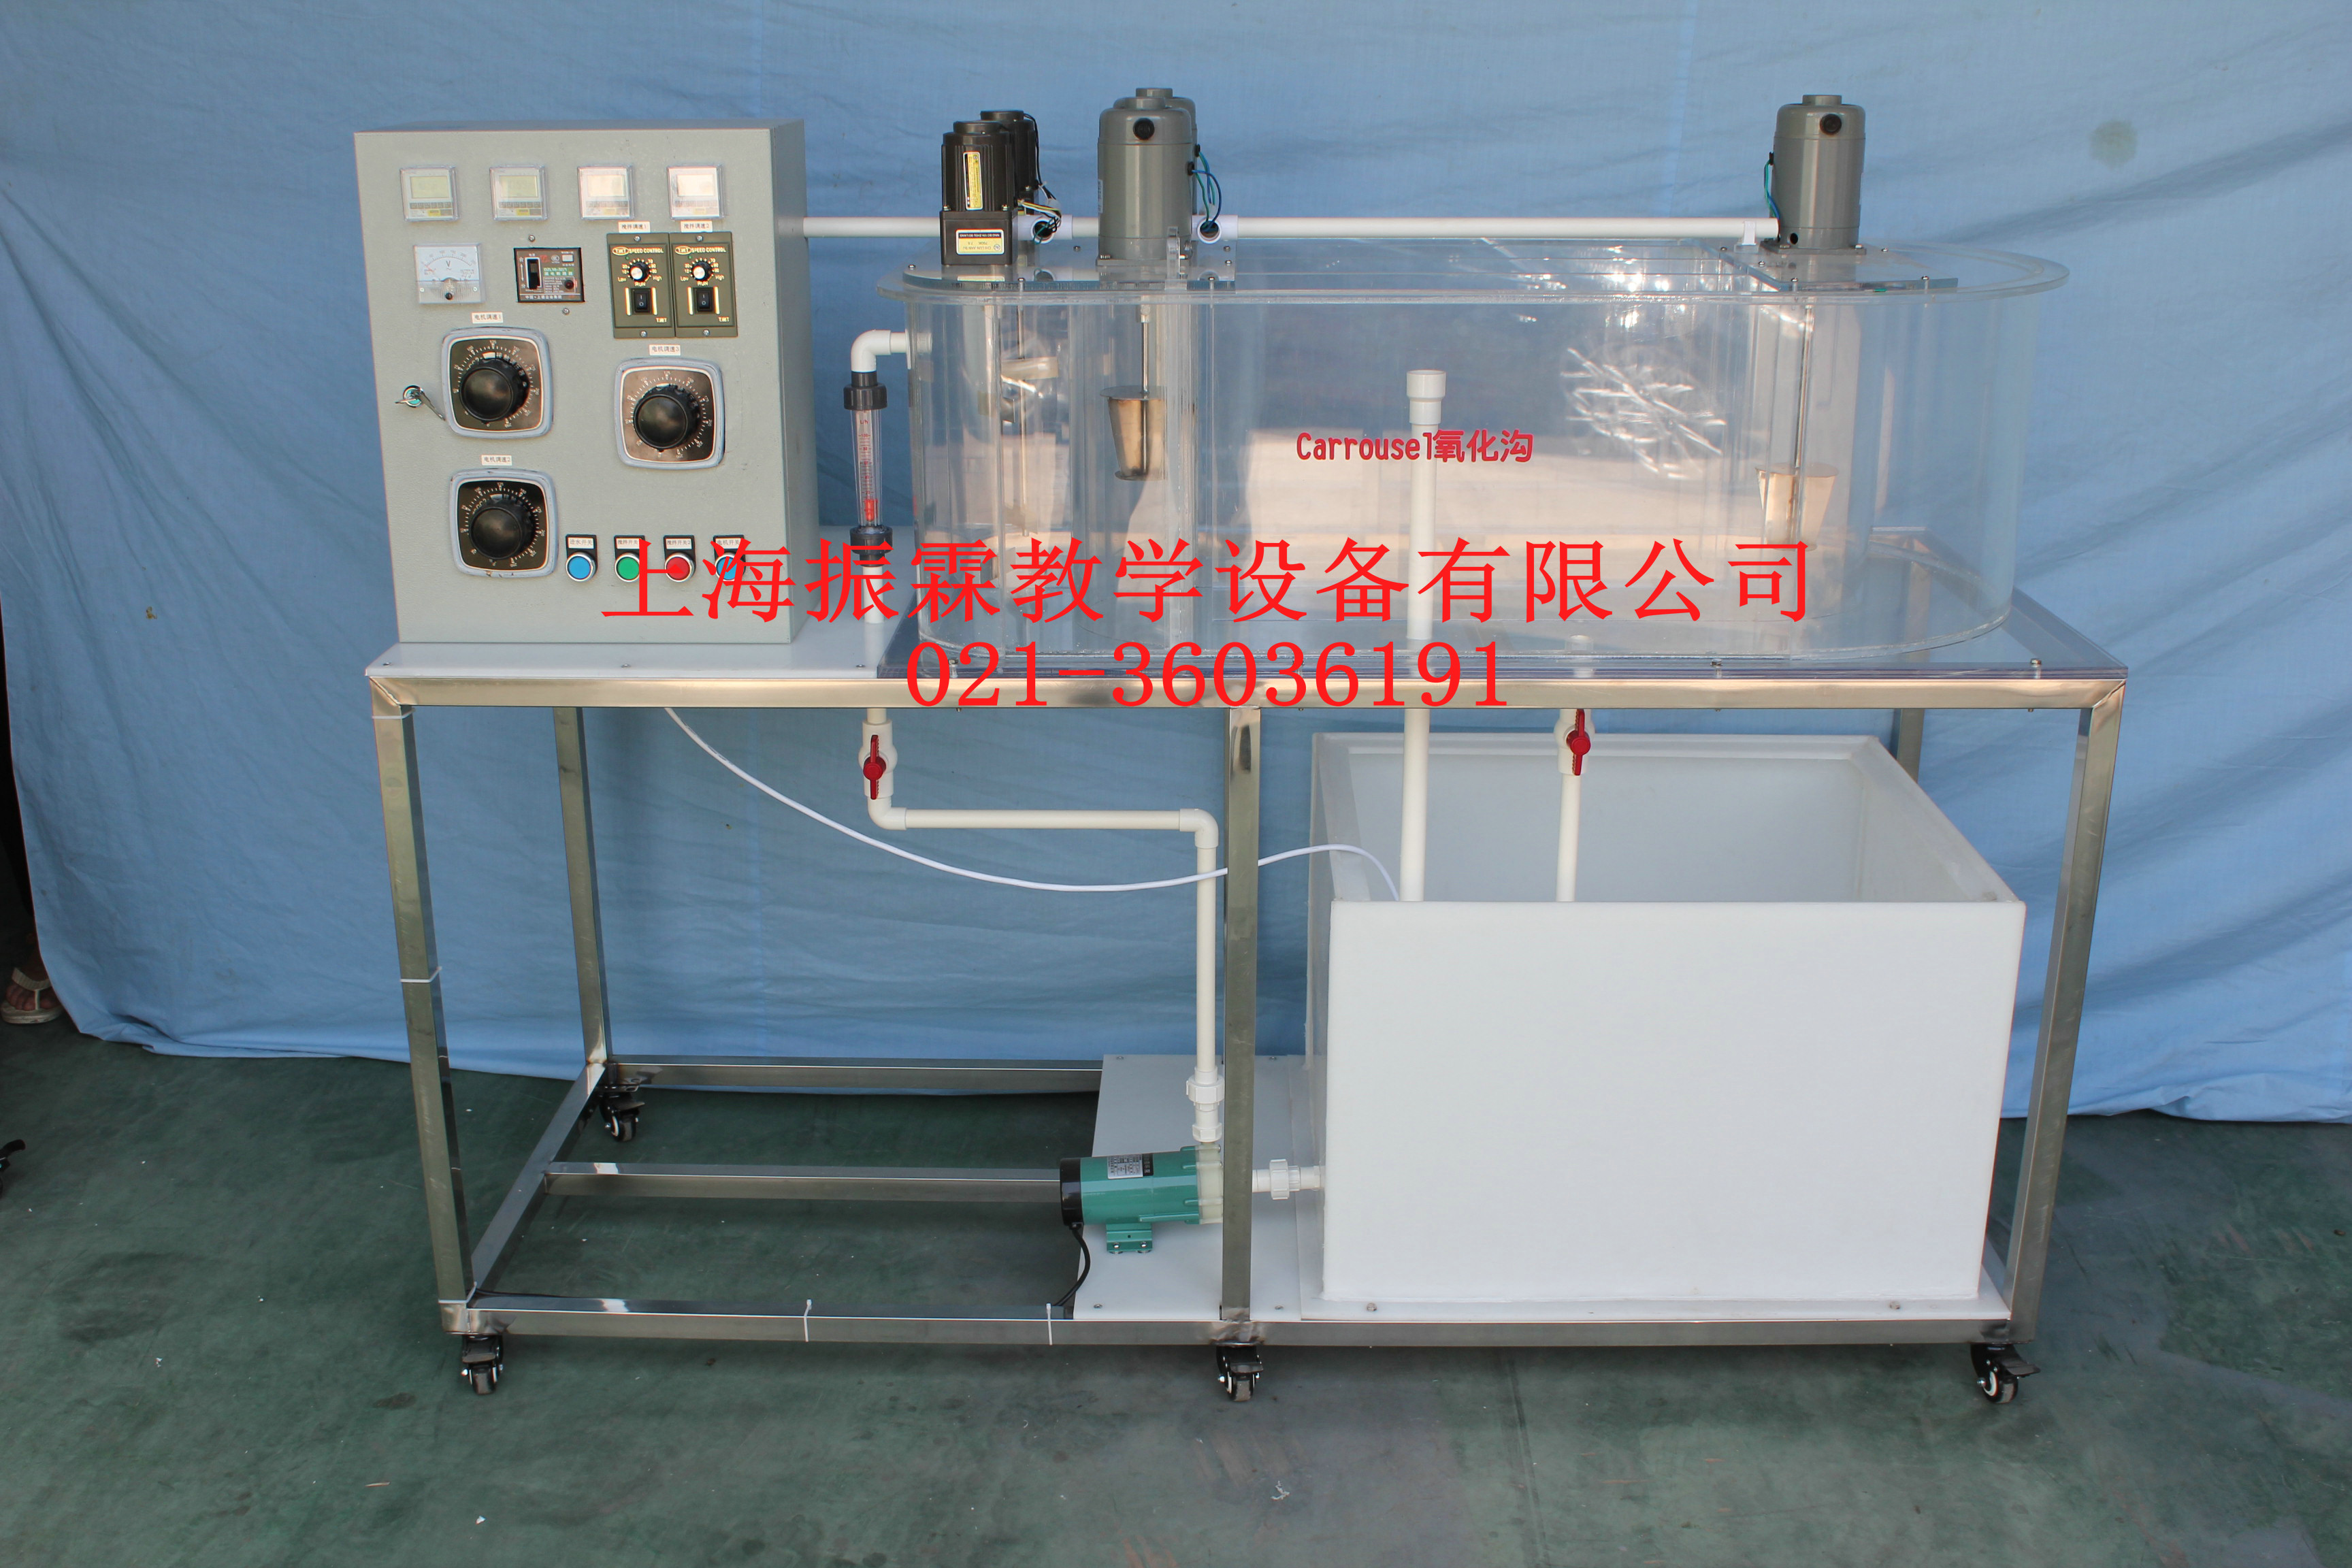 Carrousel氧化沟,Carrousel氧化沟实训装置,环境工程实验设备--上海振霖公司